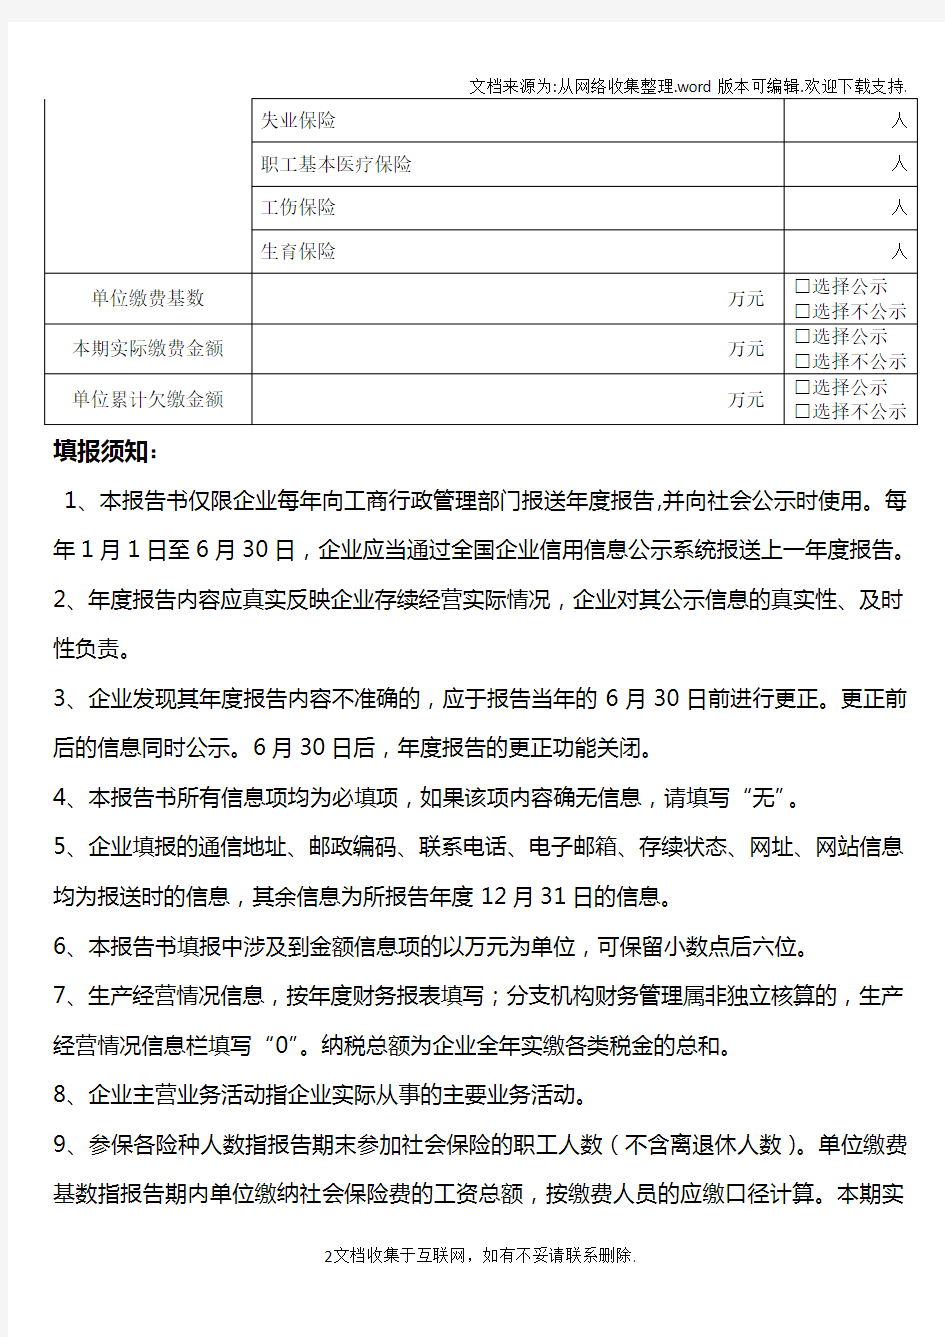 本表适用于分机构、在中国境内从事生产经营活动的